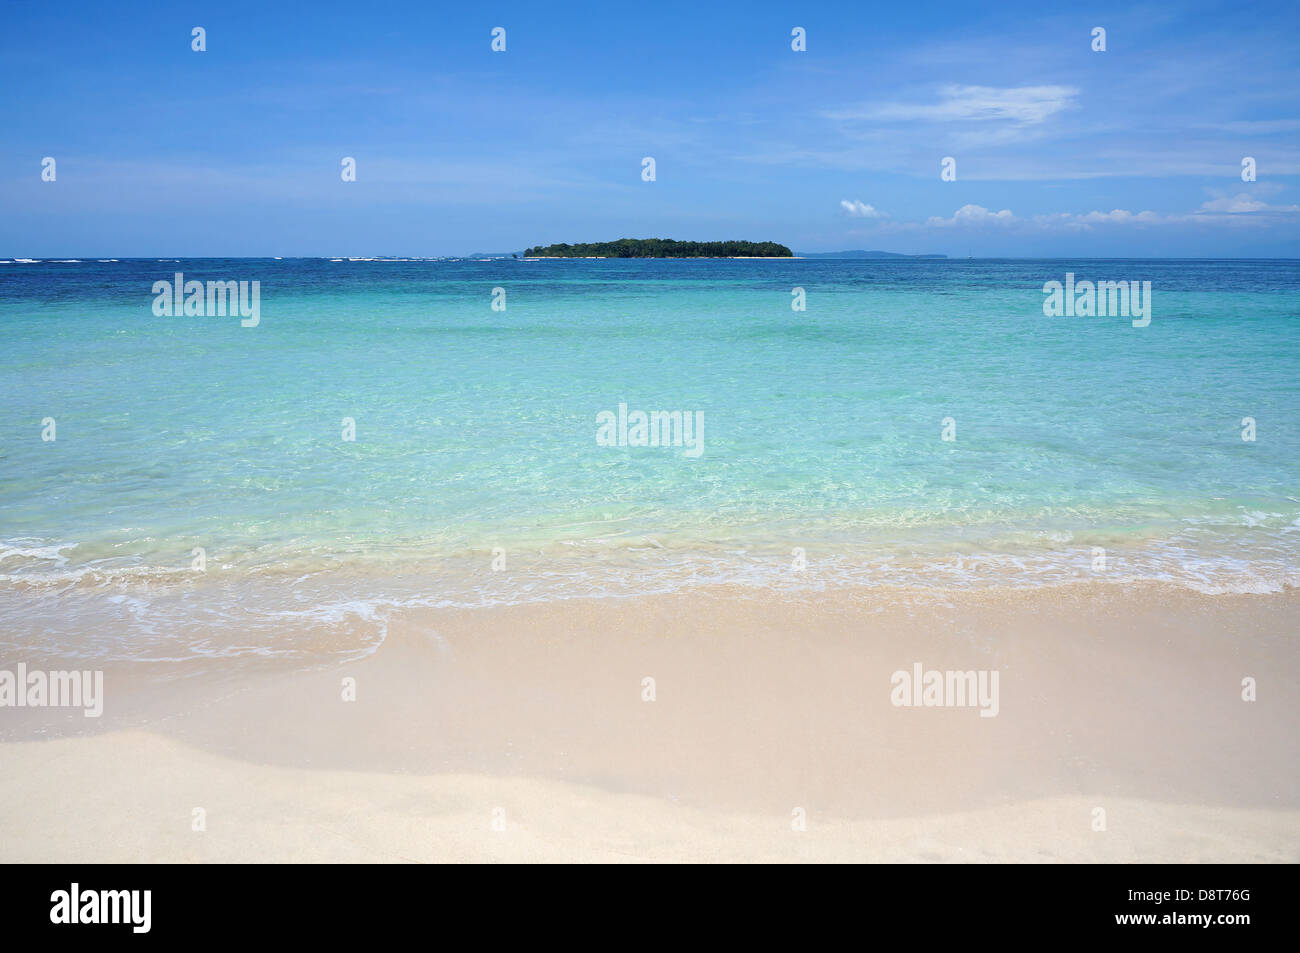 Spiaggia sabbiosa tropicale shore con acqua turchese e un'isola all'orizzonte, il mare dei Caraibi Foto Stock